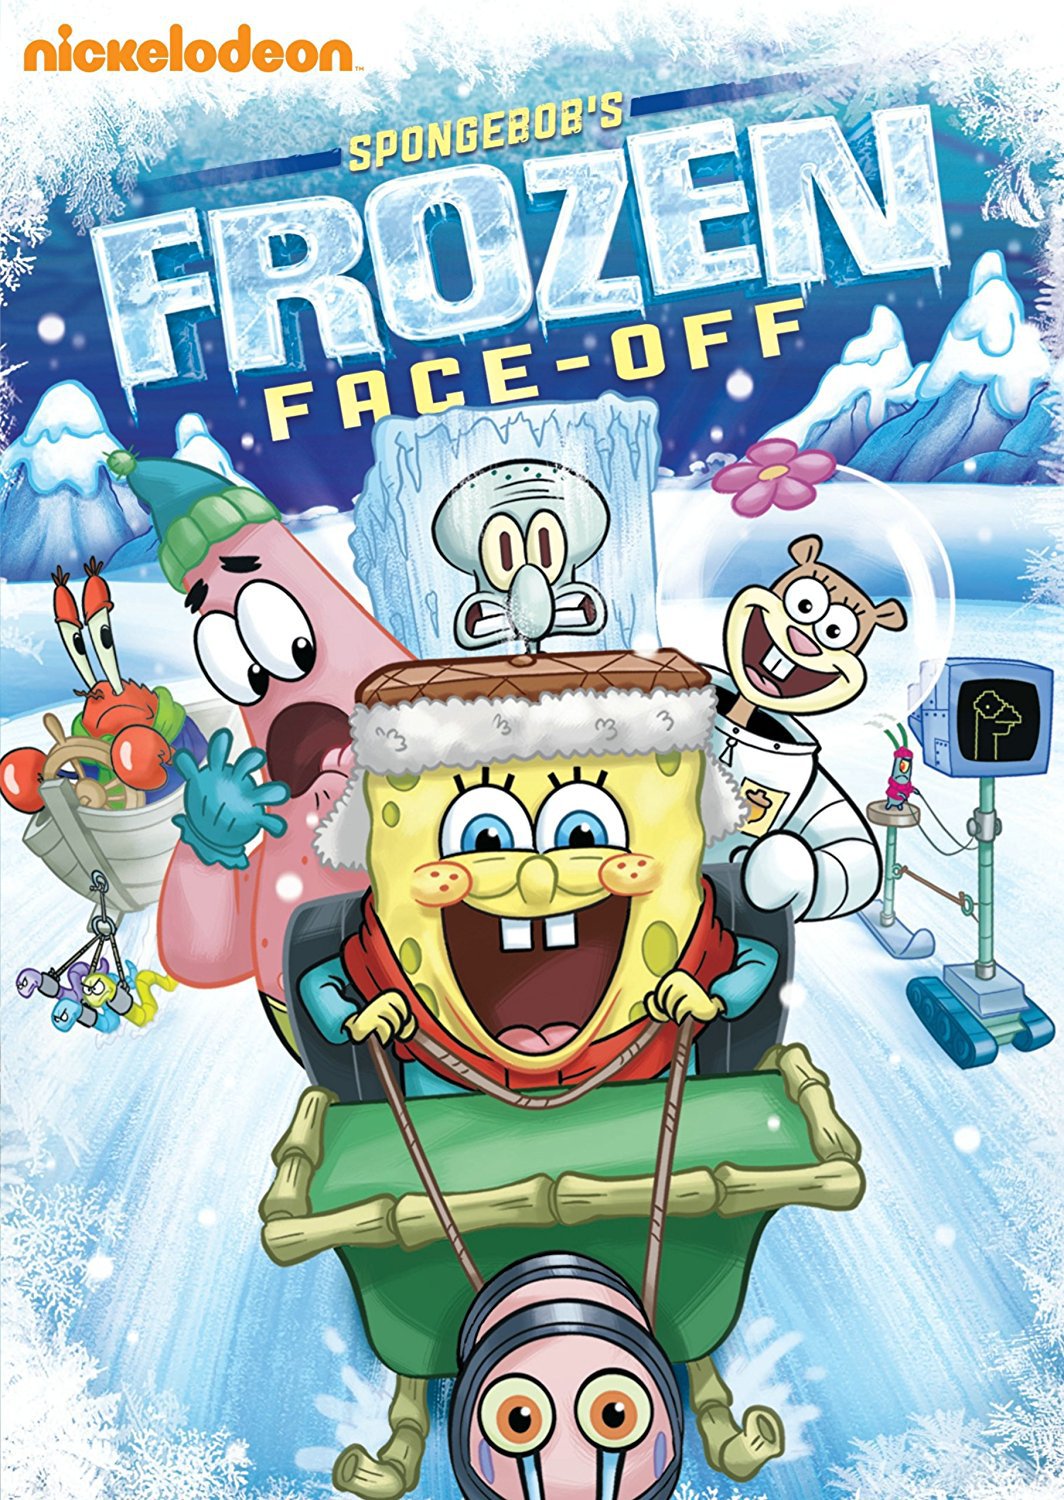 Spongebobs Frozen Face-off